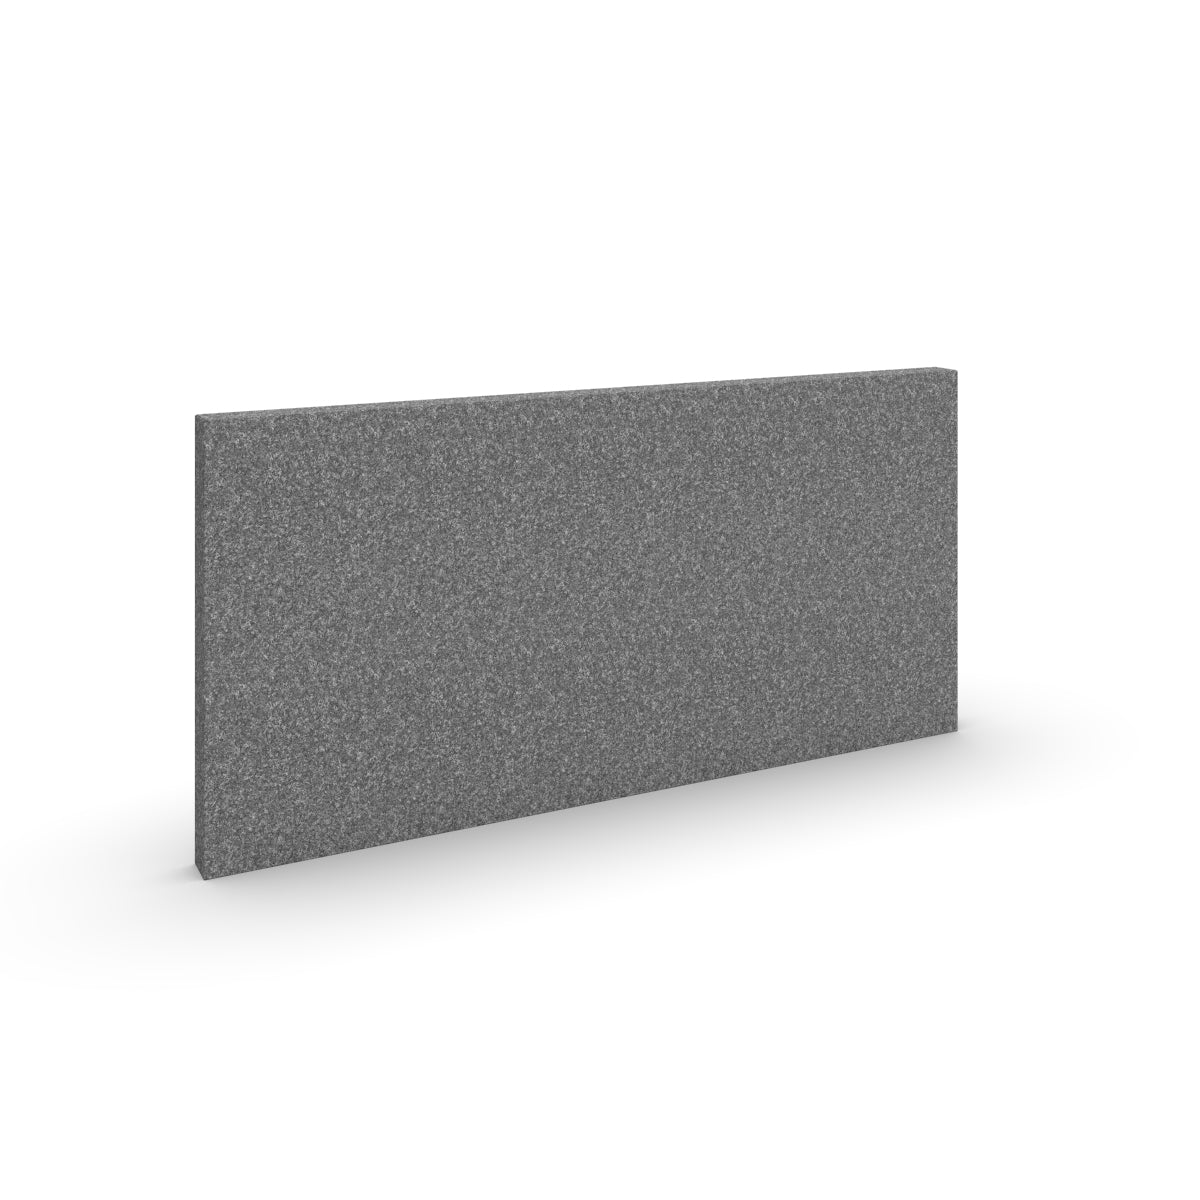 Basic wall sound absorber in dark grey acoustic wool felt. Size 58cmx116cm. Akustikkplater og lyddemping vegg